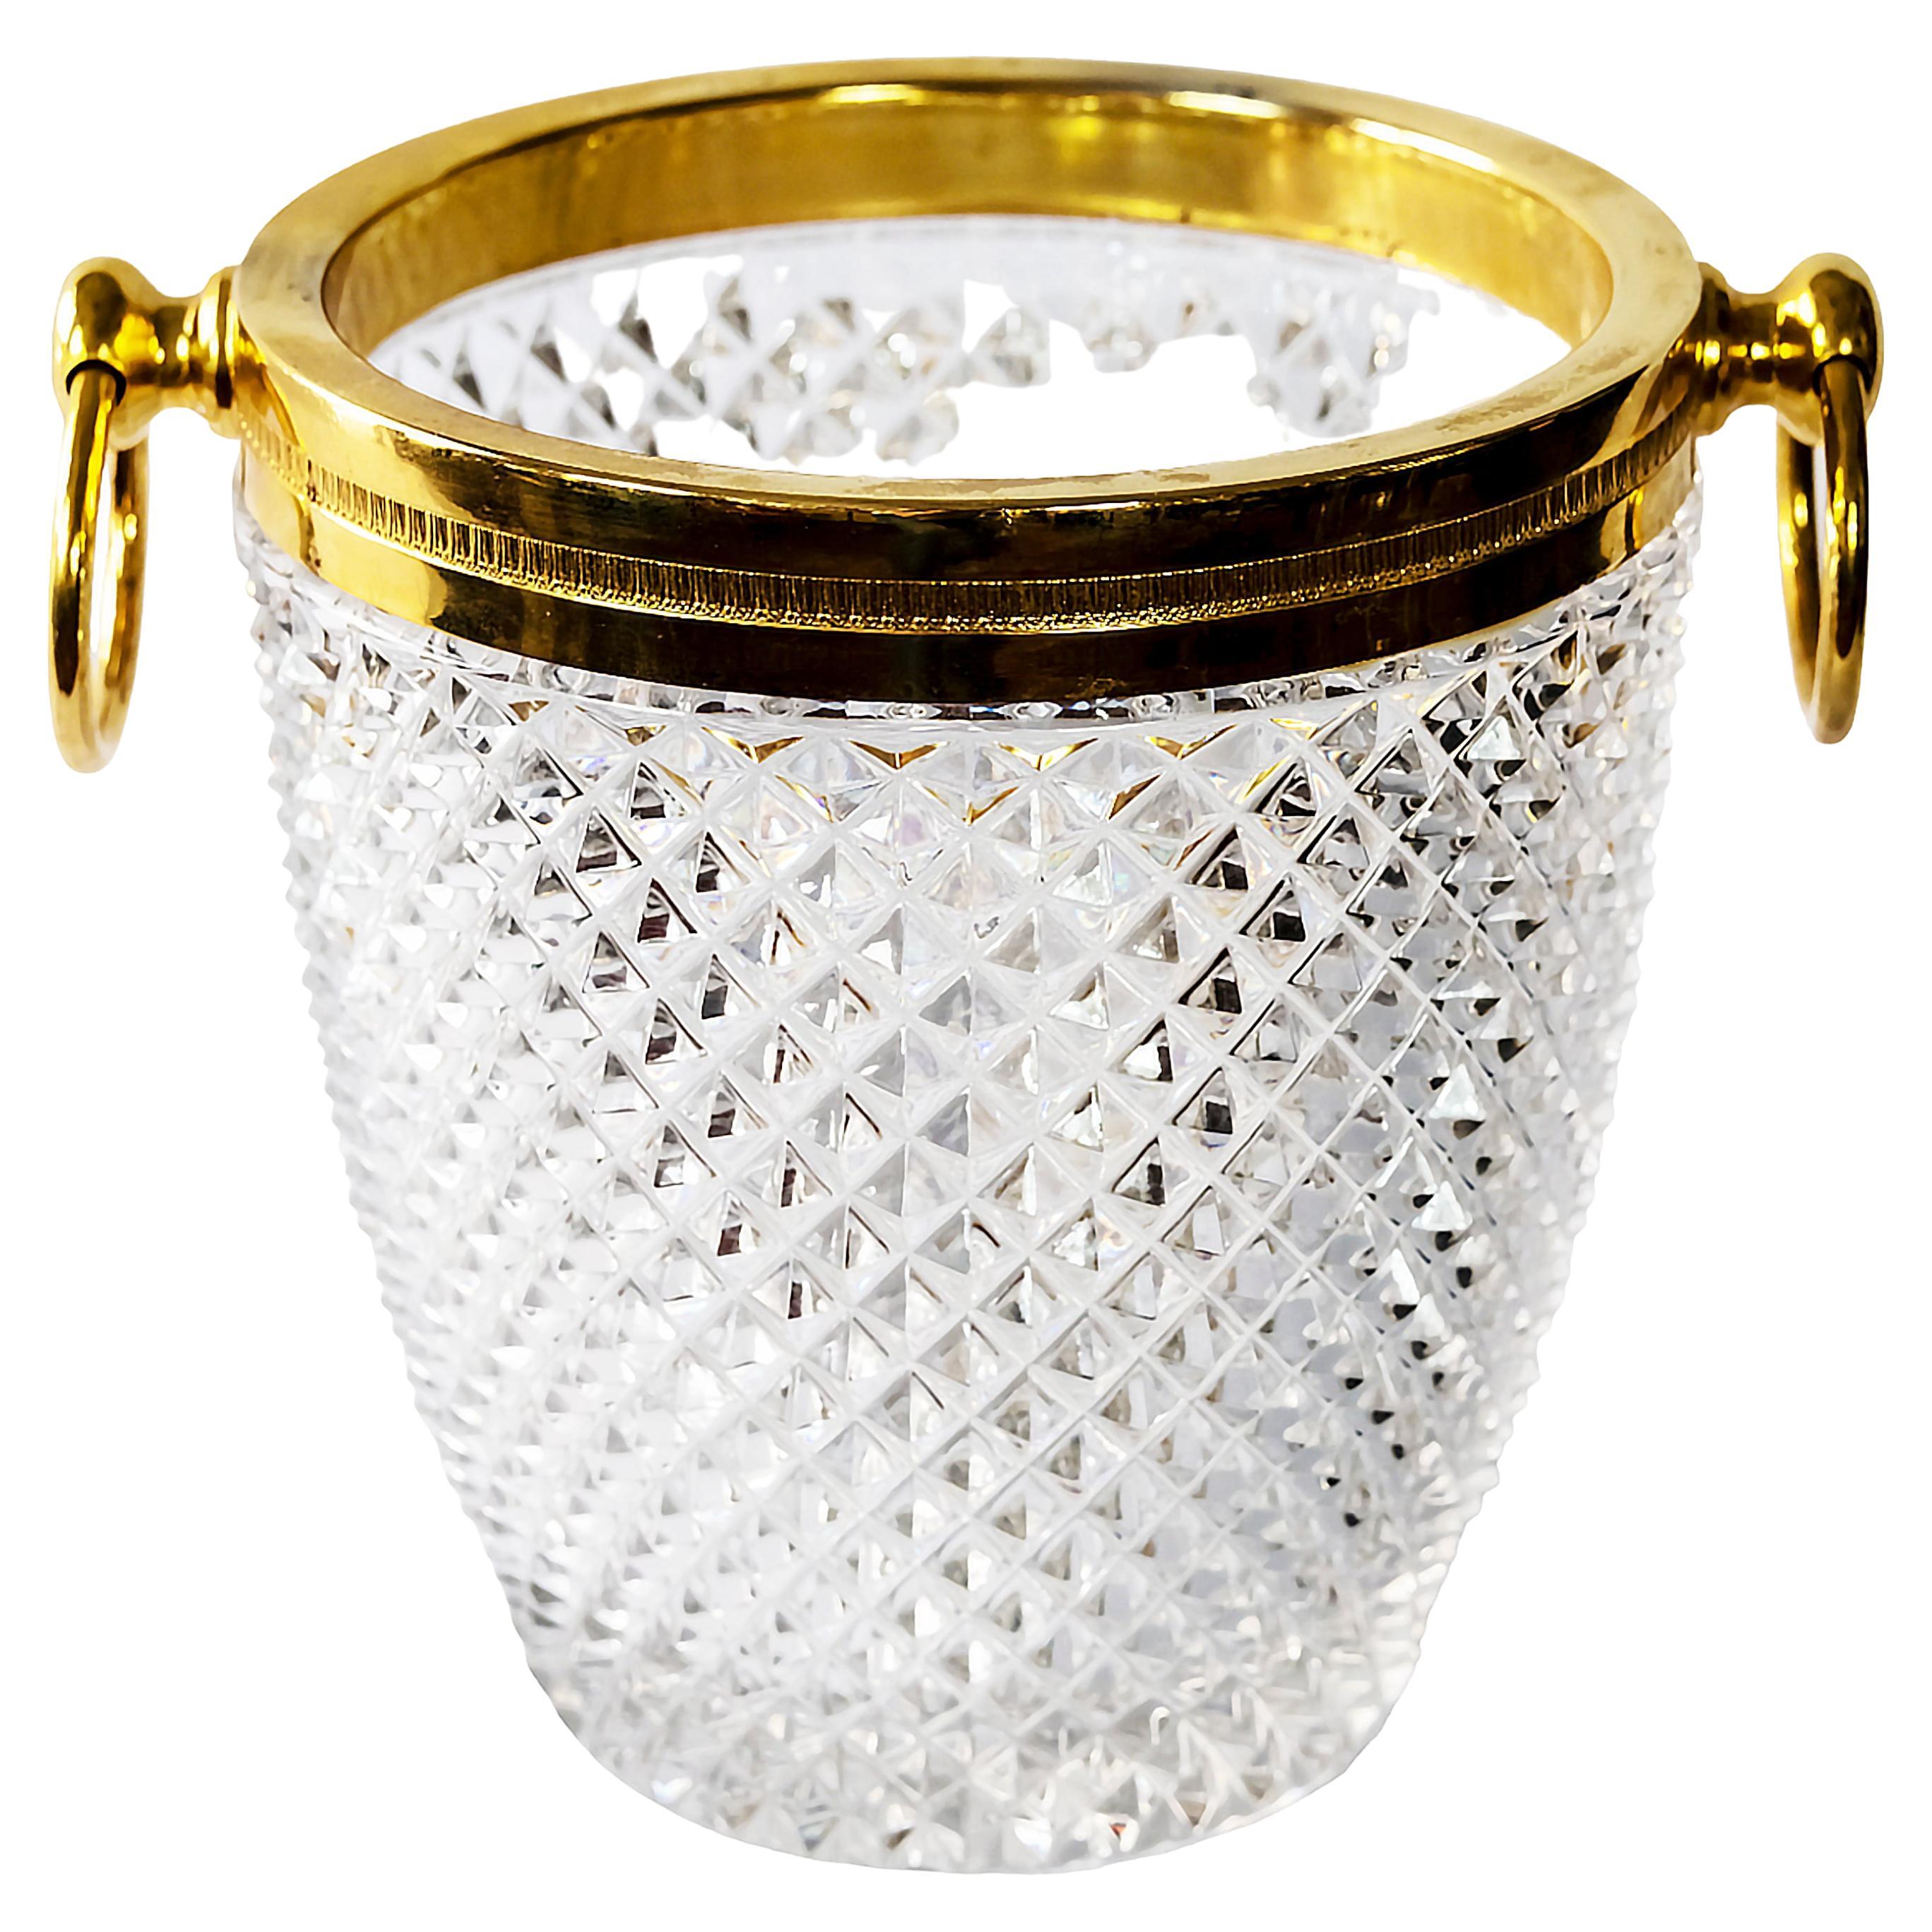 Seau à champagne vintage en cristal taillé fait à la main en France, décoré de métal doré et de poignées.
Très lourd et solide.
 